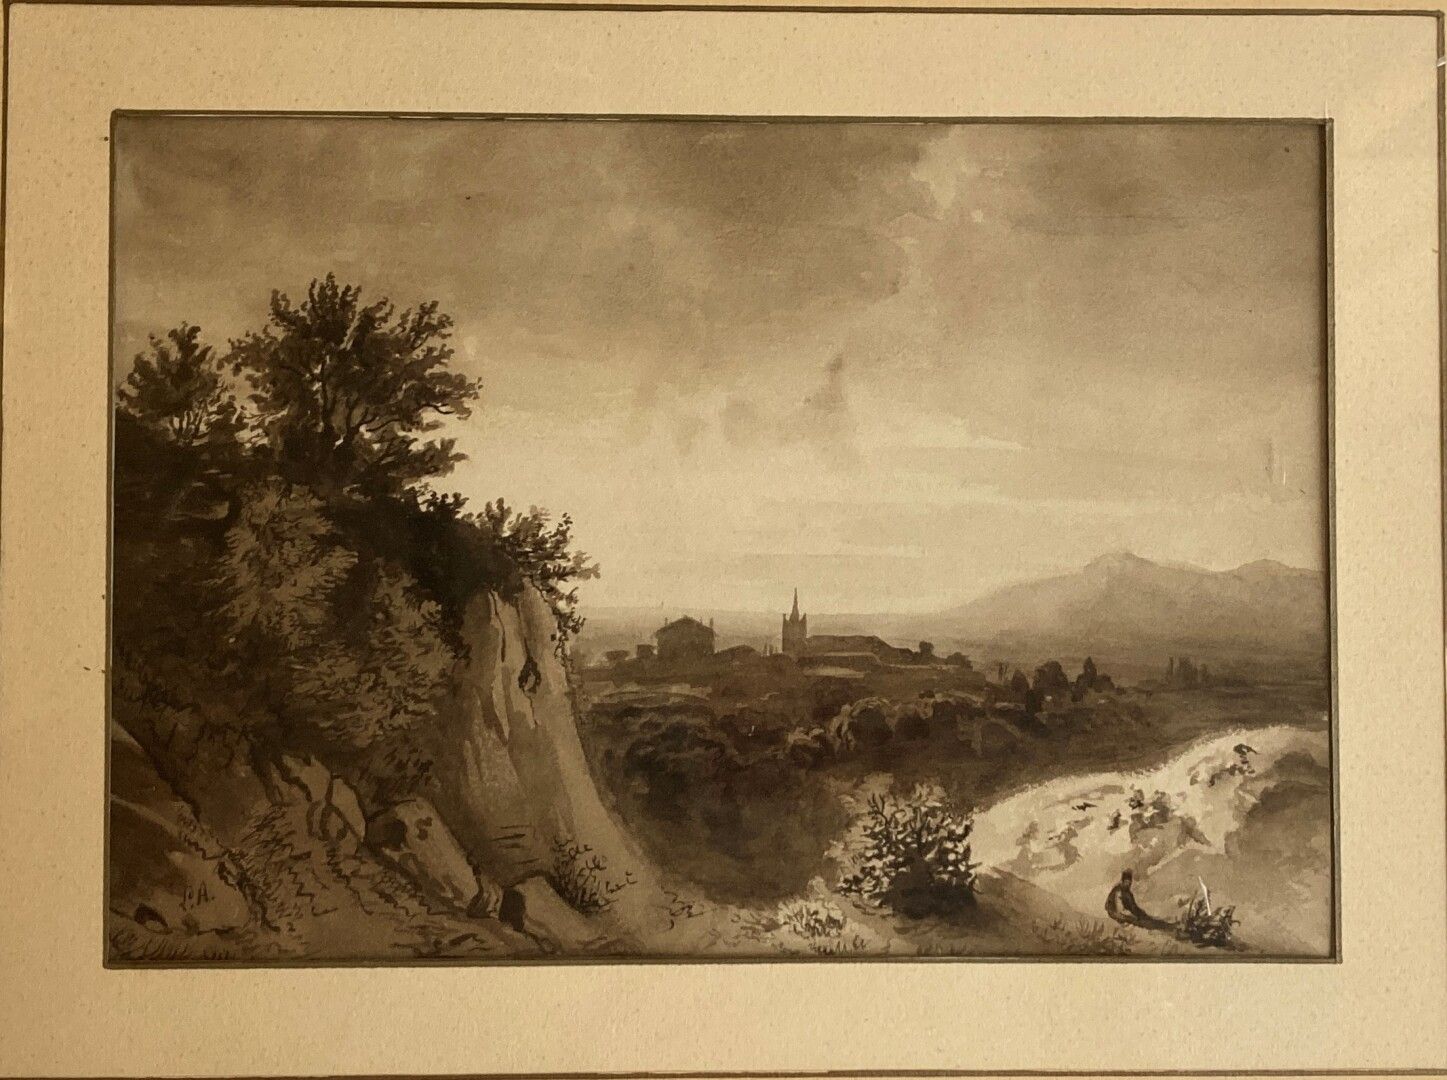 Null 约1840年的法国学校

岩石景观，远处有一个村庄

黑色和棕色水洗

15 x 22 厘米